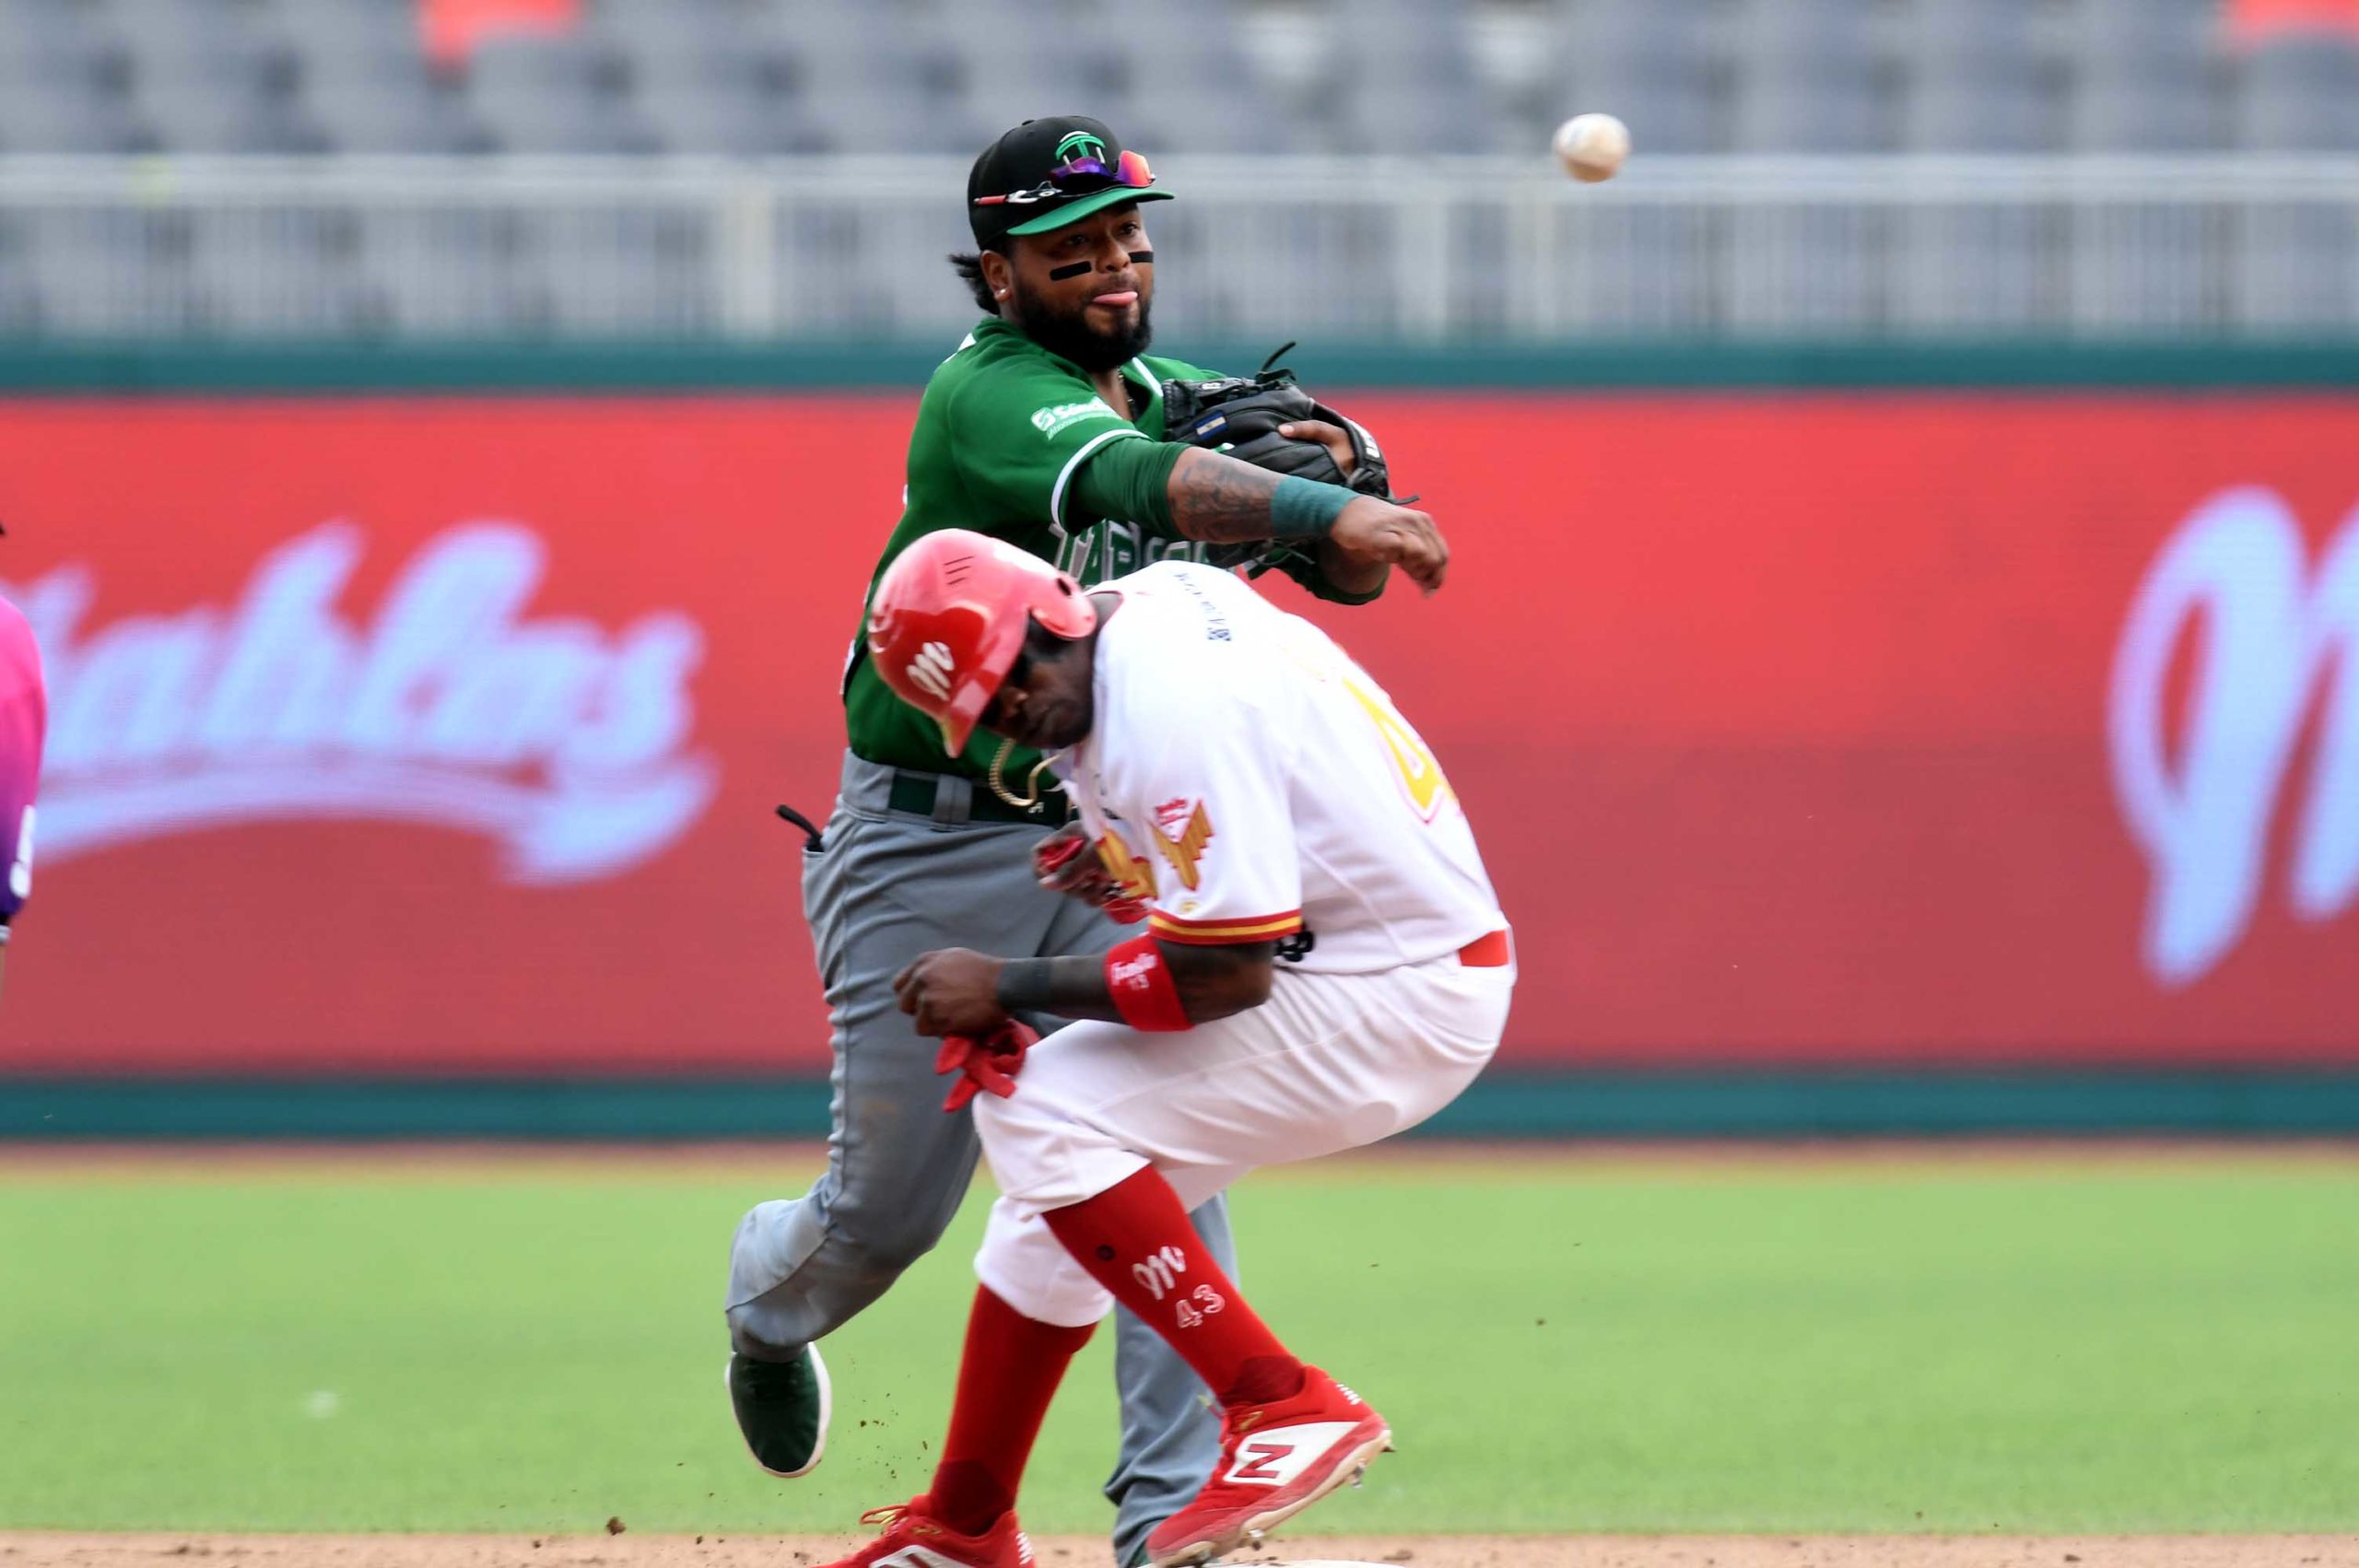 Diablos Rojos vs Olmecas scaled - Liga Mexicana de Beisbol busca transmitir partidos en República Dominicana